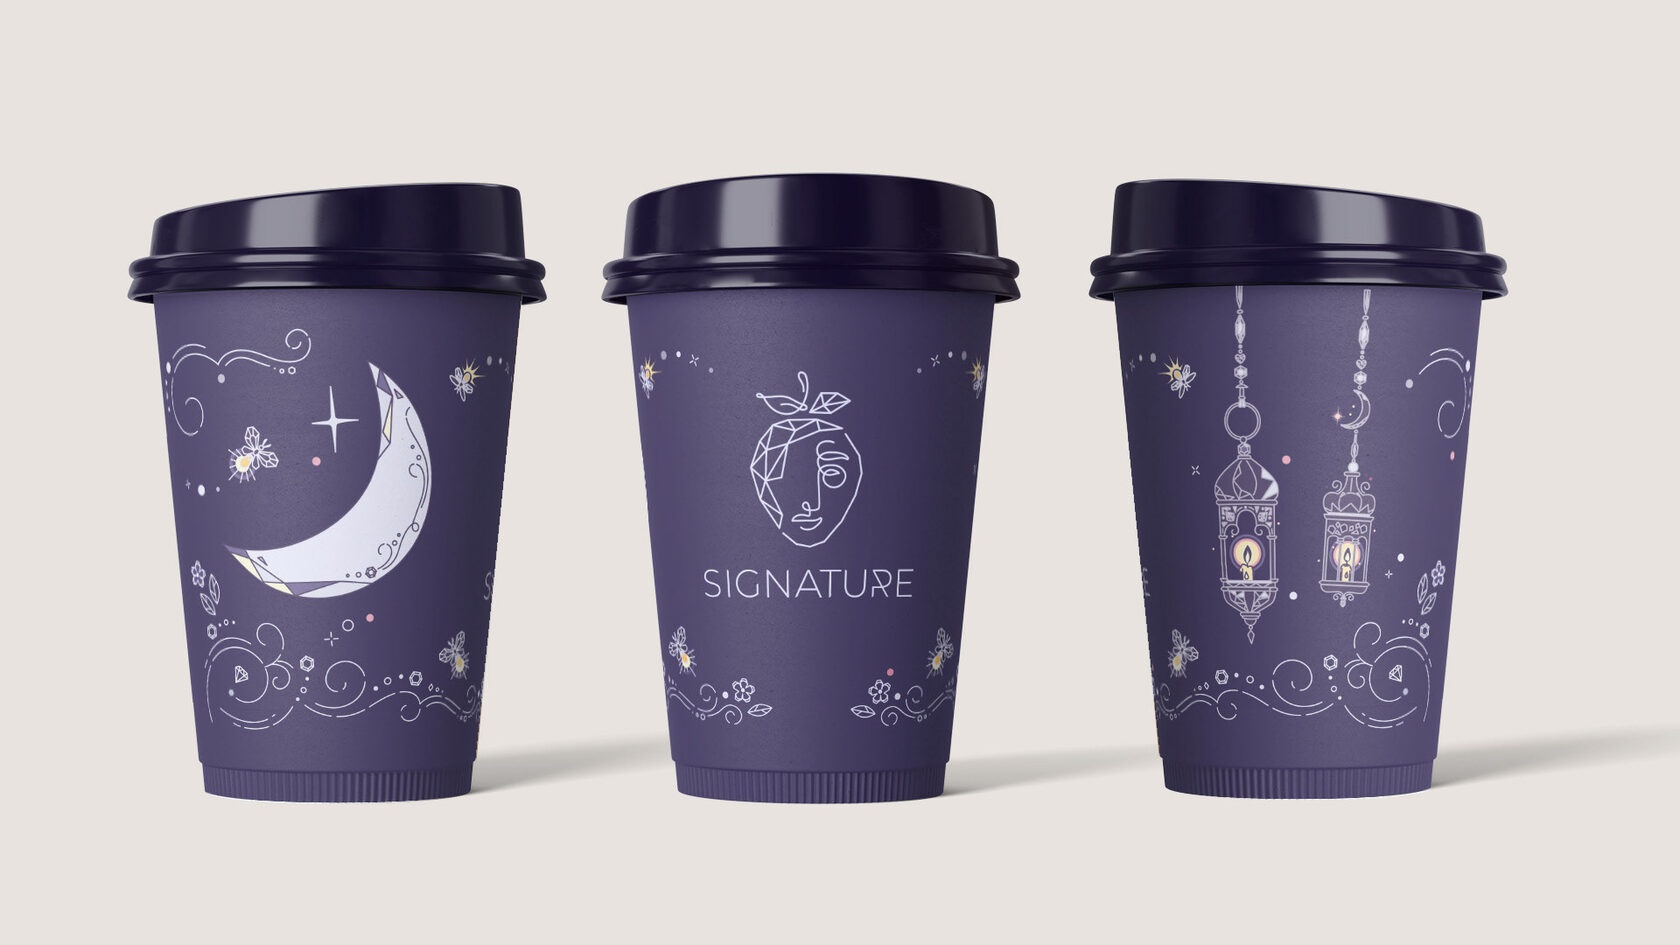 Дизайн стаканчиков в арабском стиле для кофейни Signature